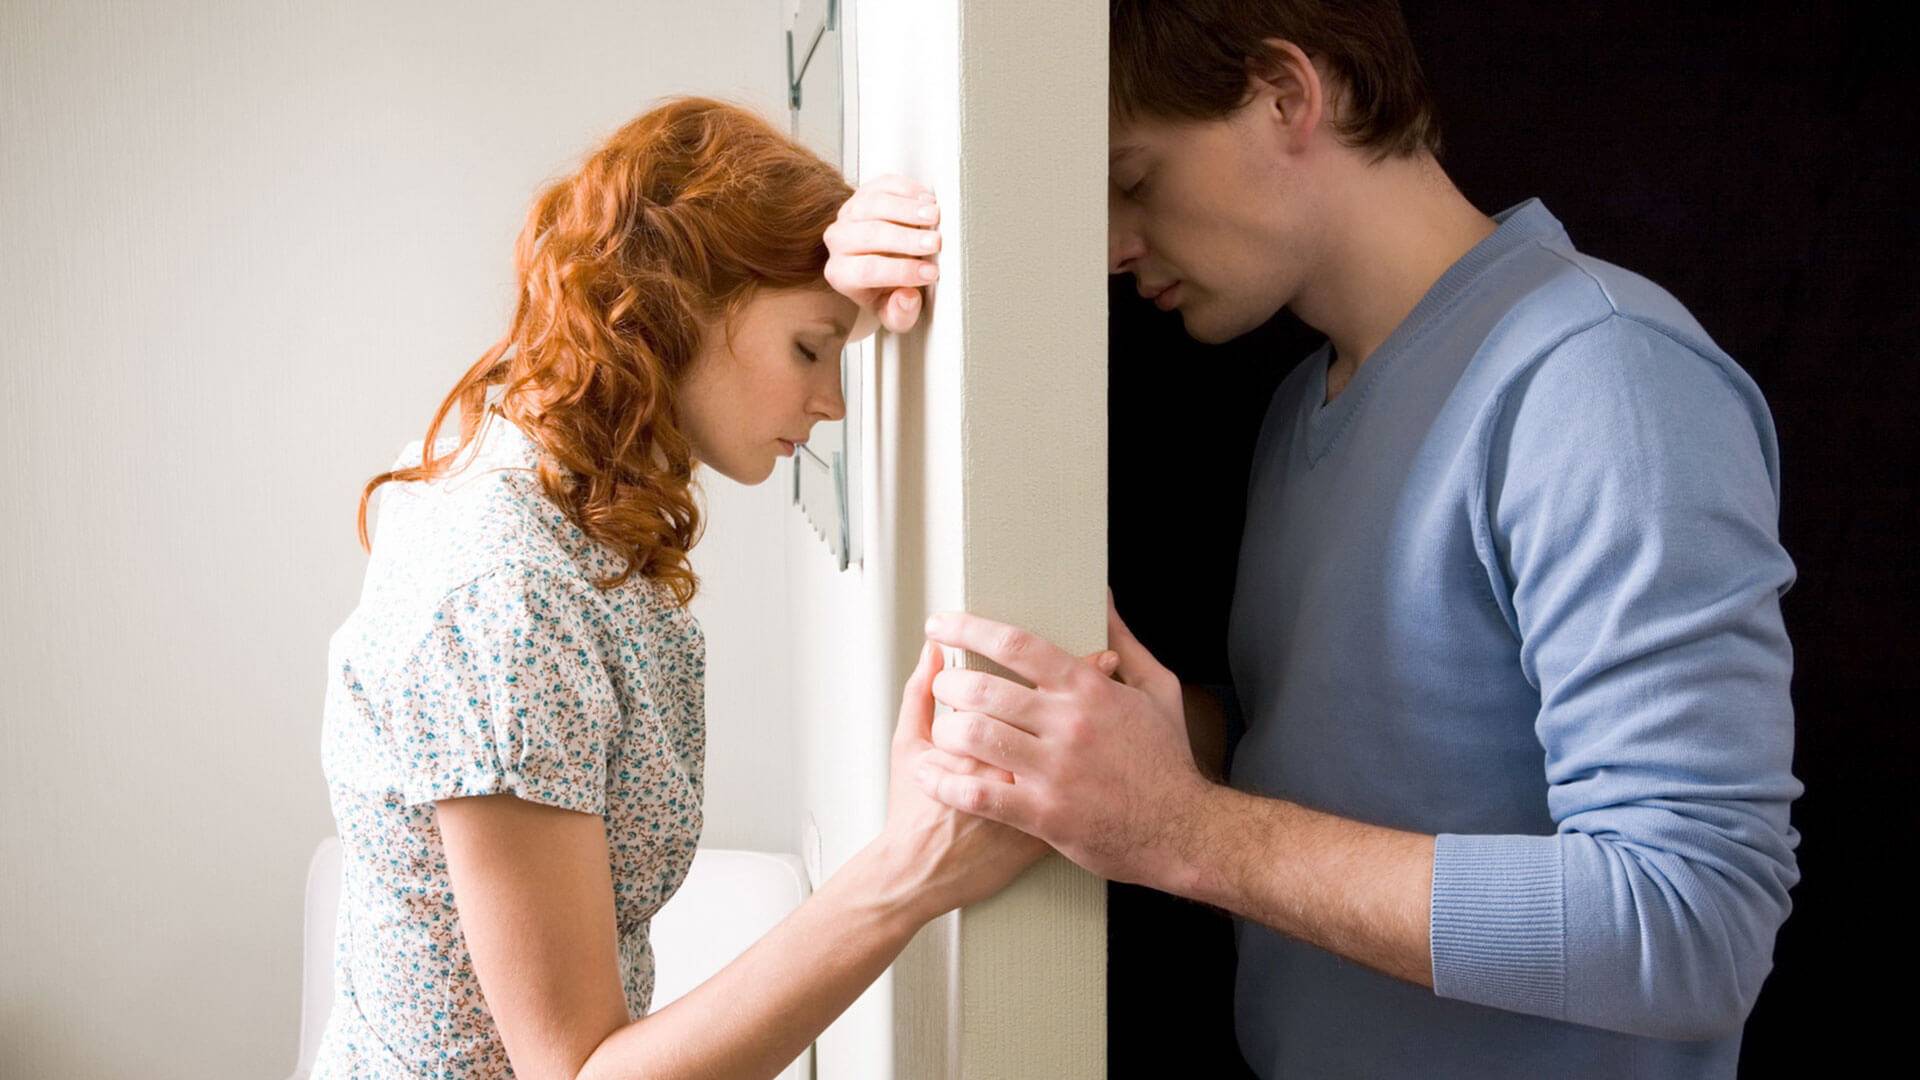 Как наладить отношения с мужем на грани развода – 1 секрет